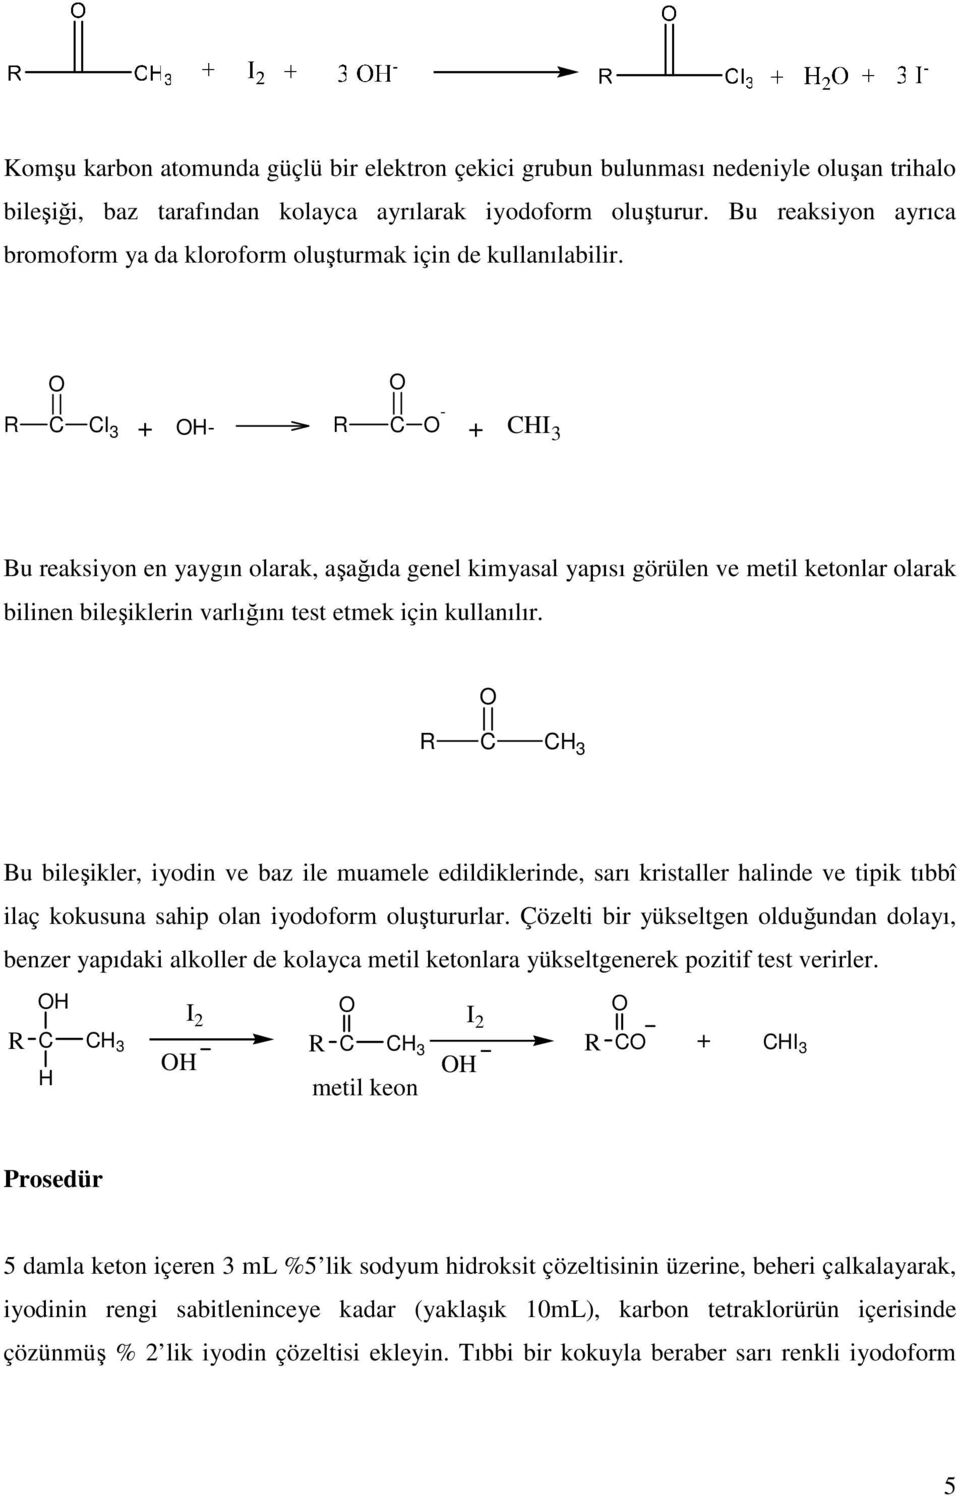 R l 3 + - R - + I 3 Bu reaksiyon en yaygın olarak, aşağıda genel kimyasal yapısı görülen ve metil ketonlar olarak bilinen bileşiklerin varlığını test etmek için kullanılır.